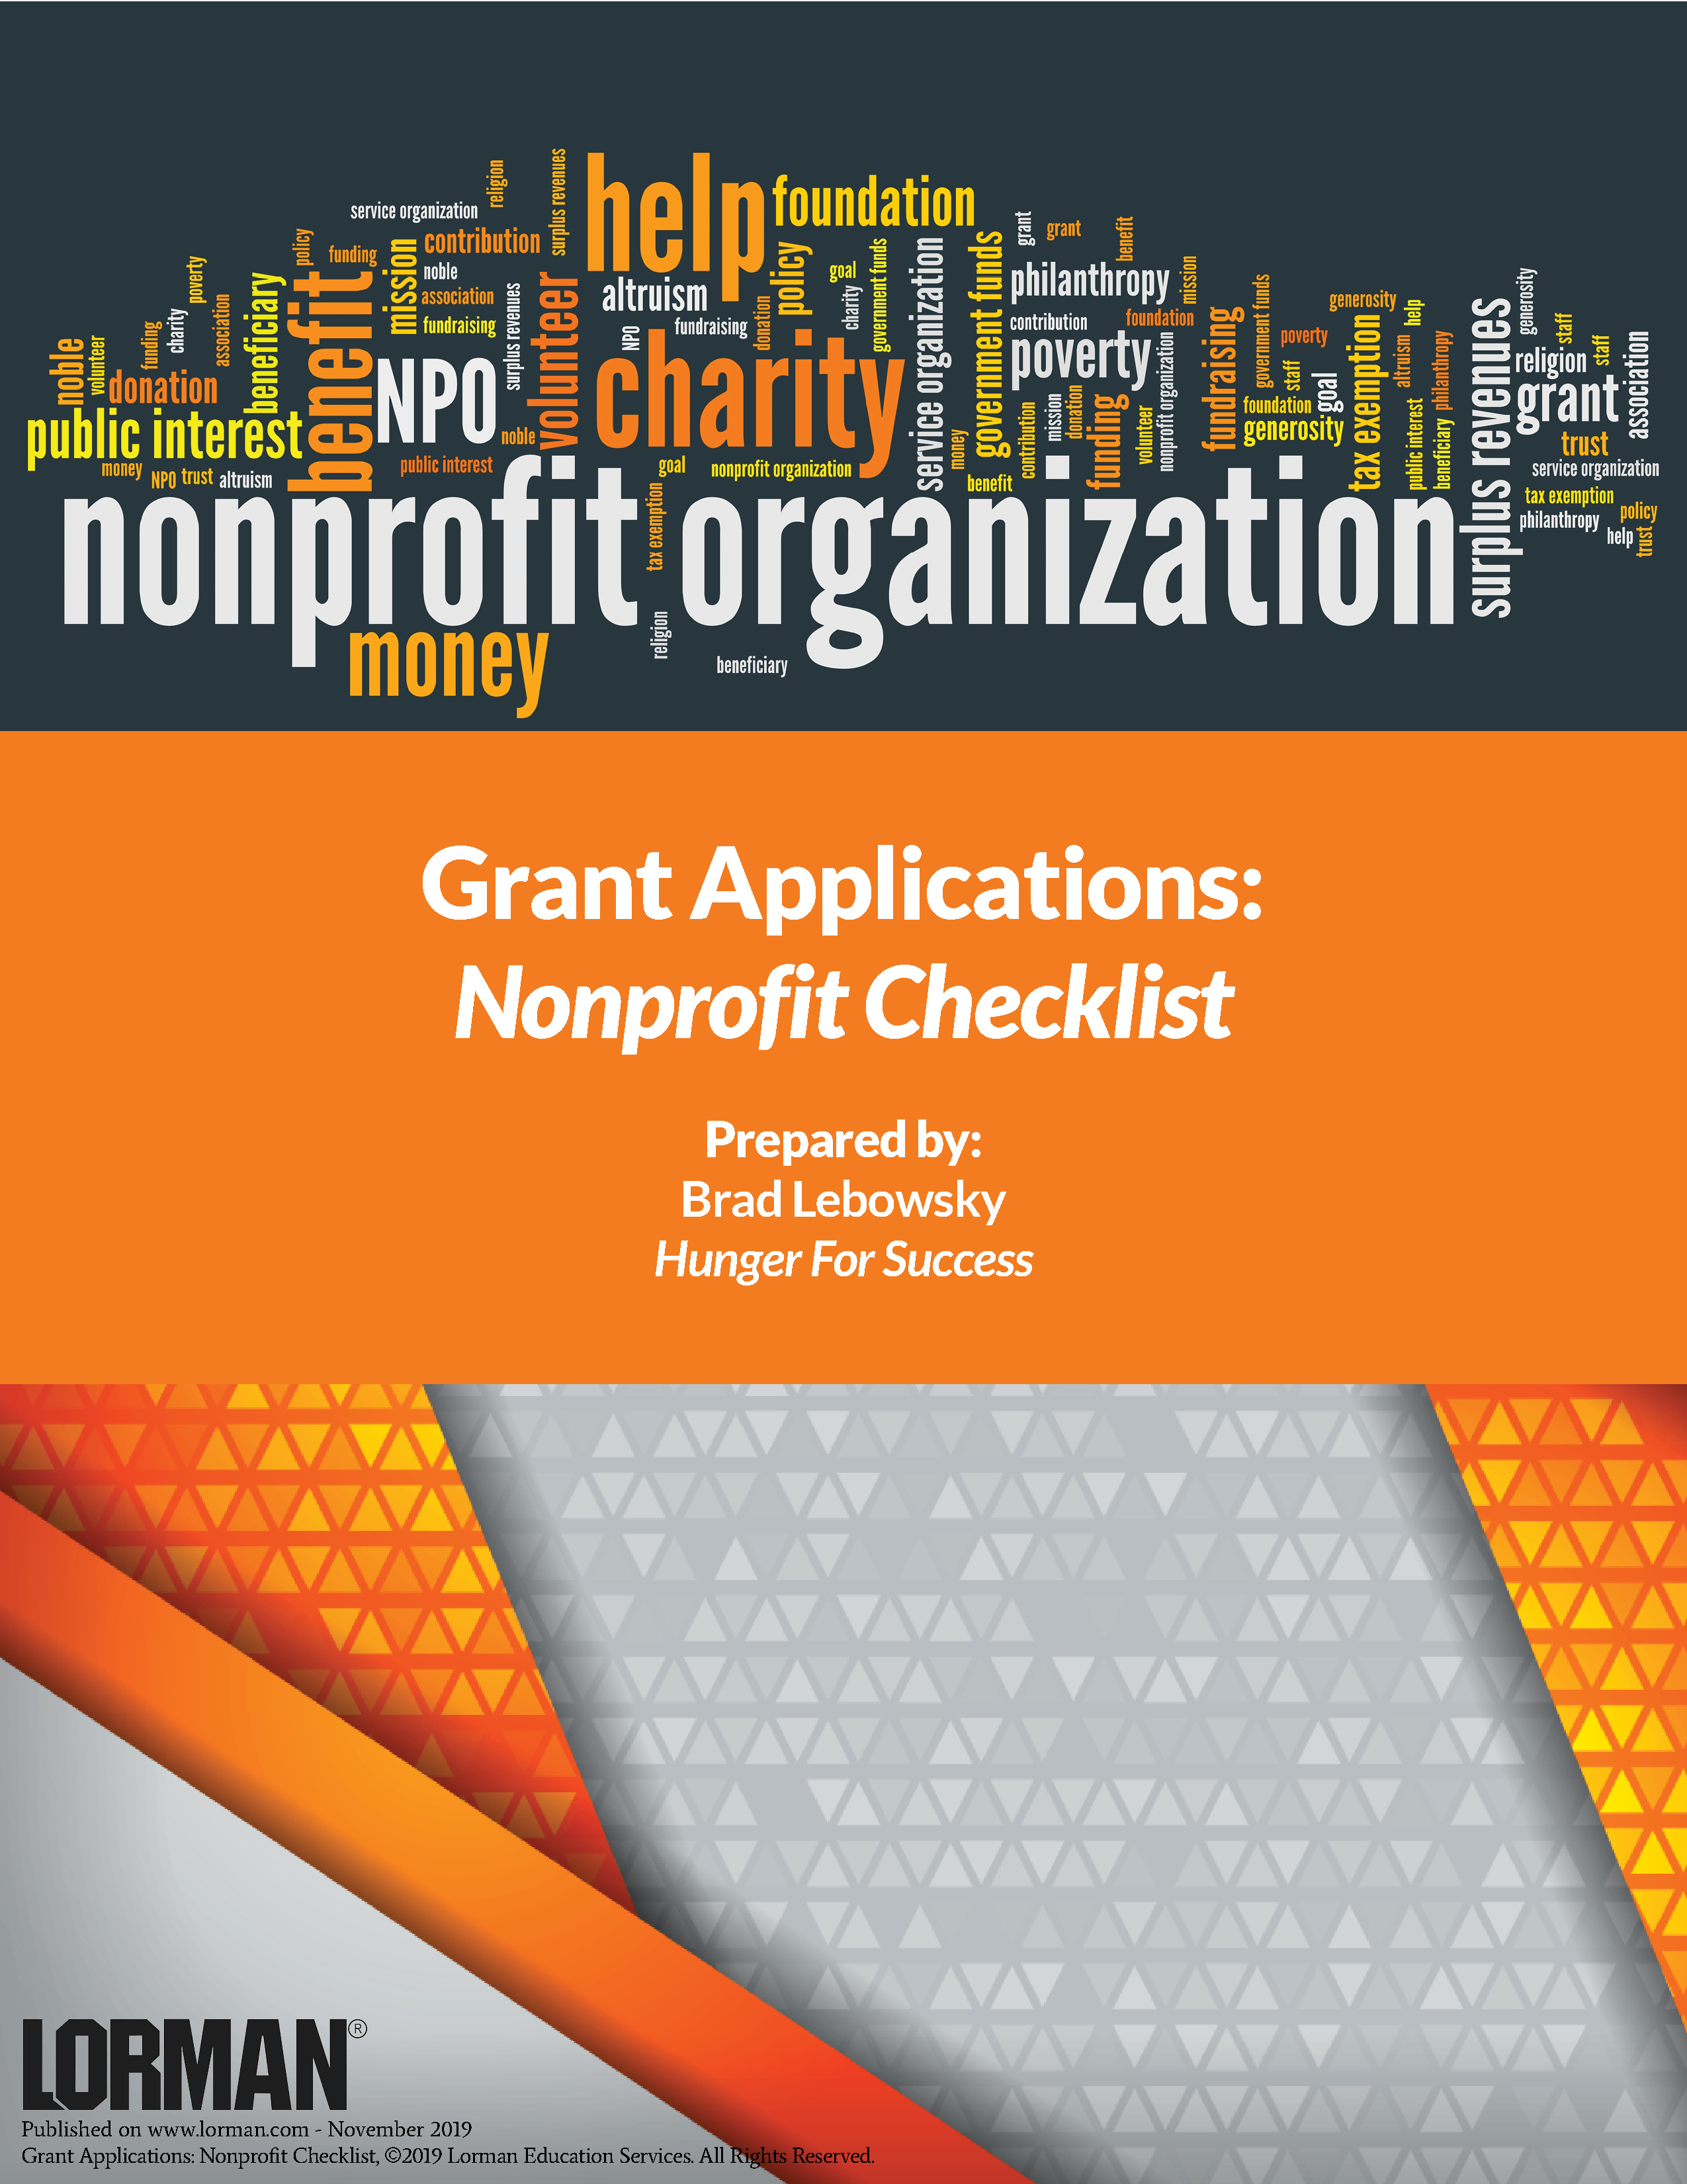 Grant Applications: Nonprofit Checklist